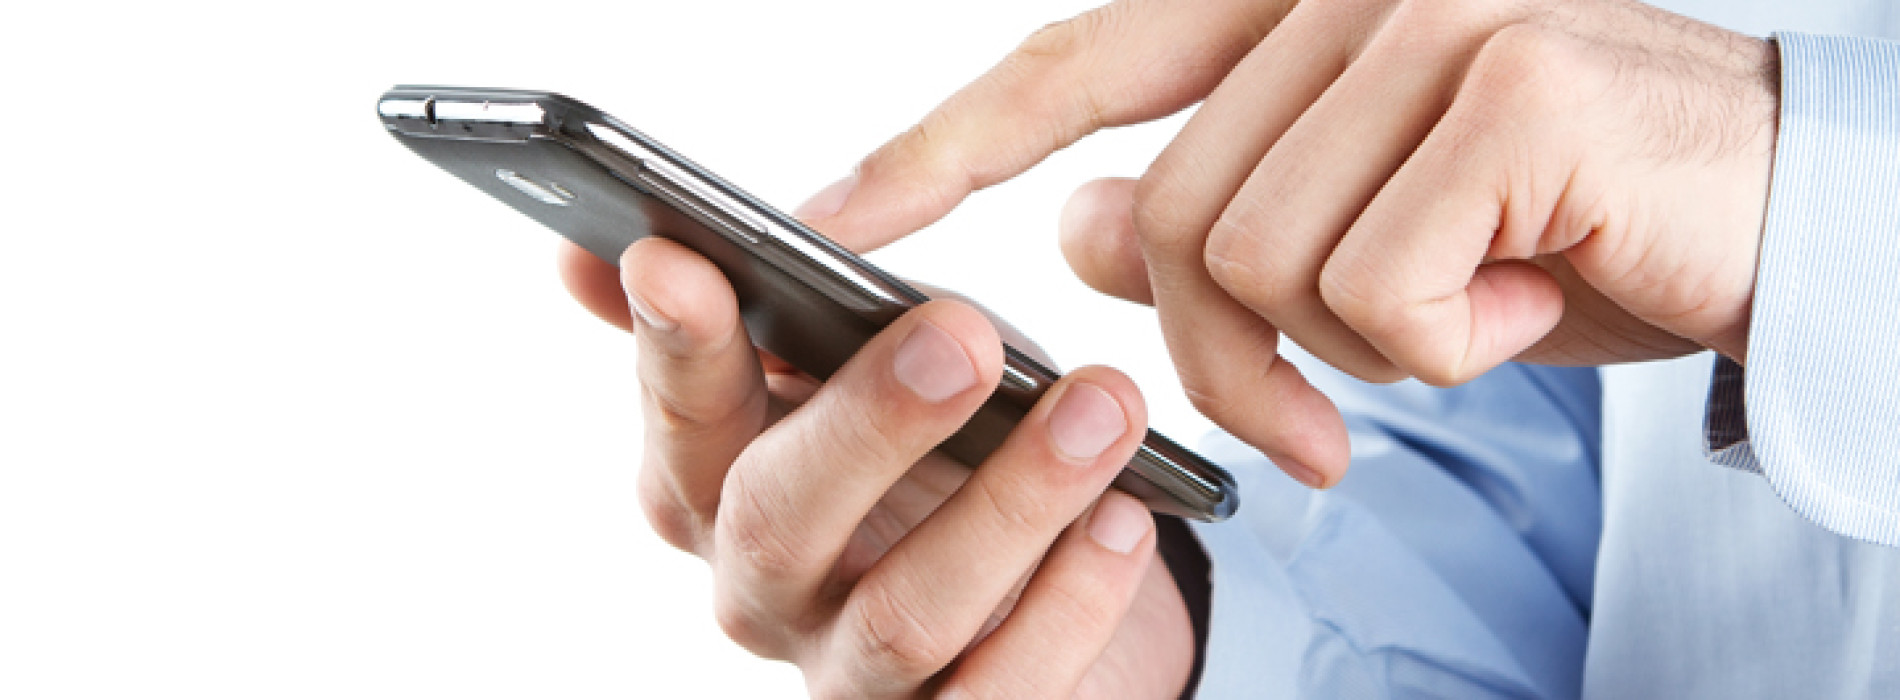 W 2015 r. co dziesiąty smartfon na świecie zostanie wykorzystany do płatności mobilnych przynajmniej raz w miesiącu